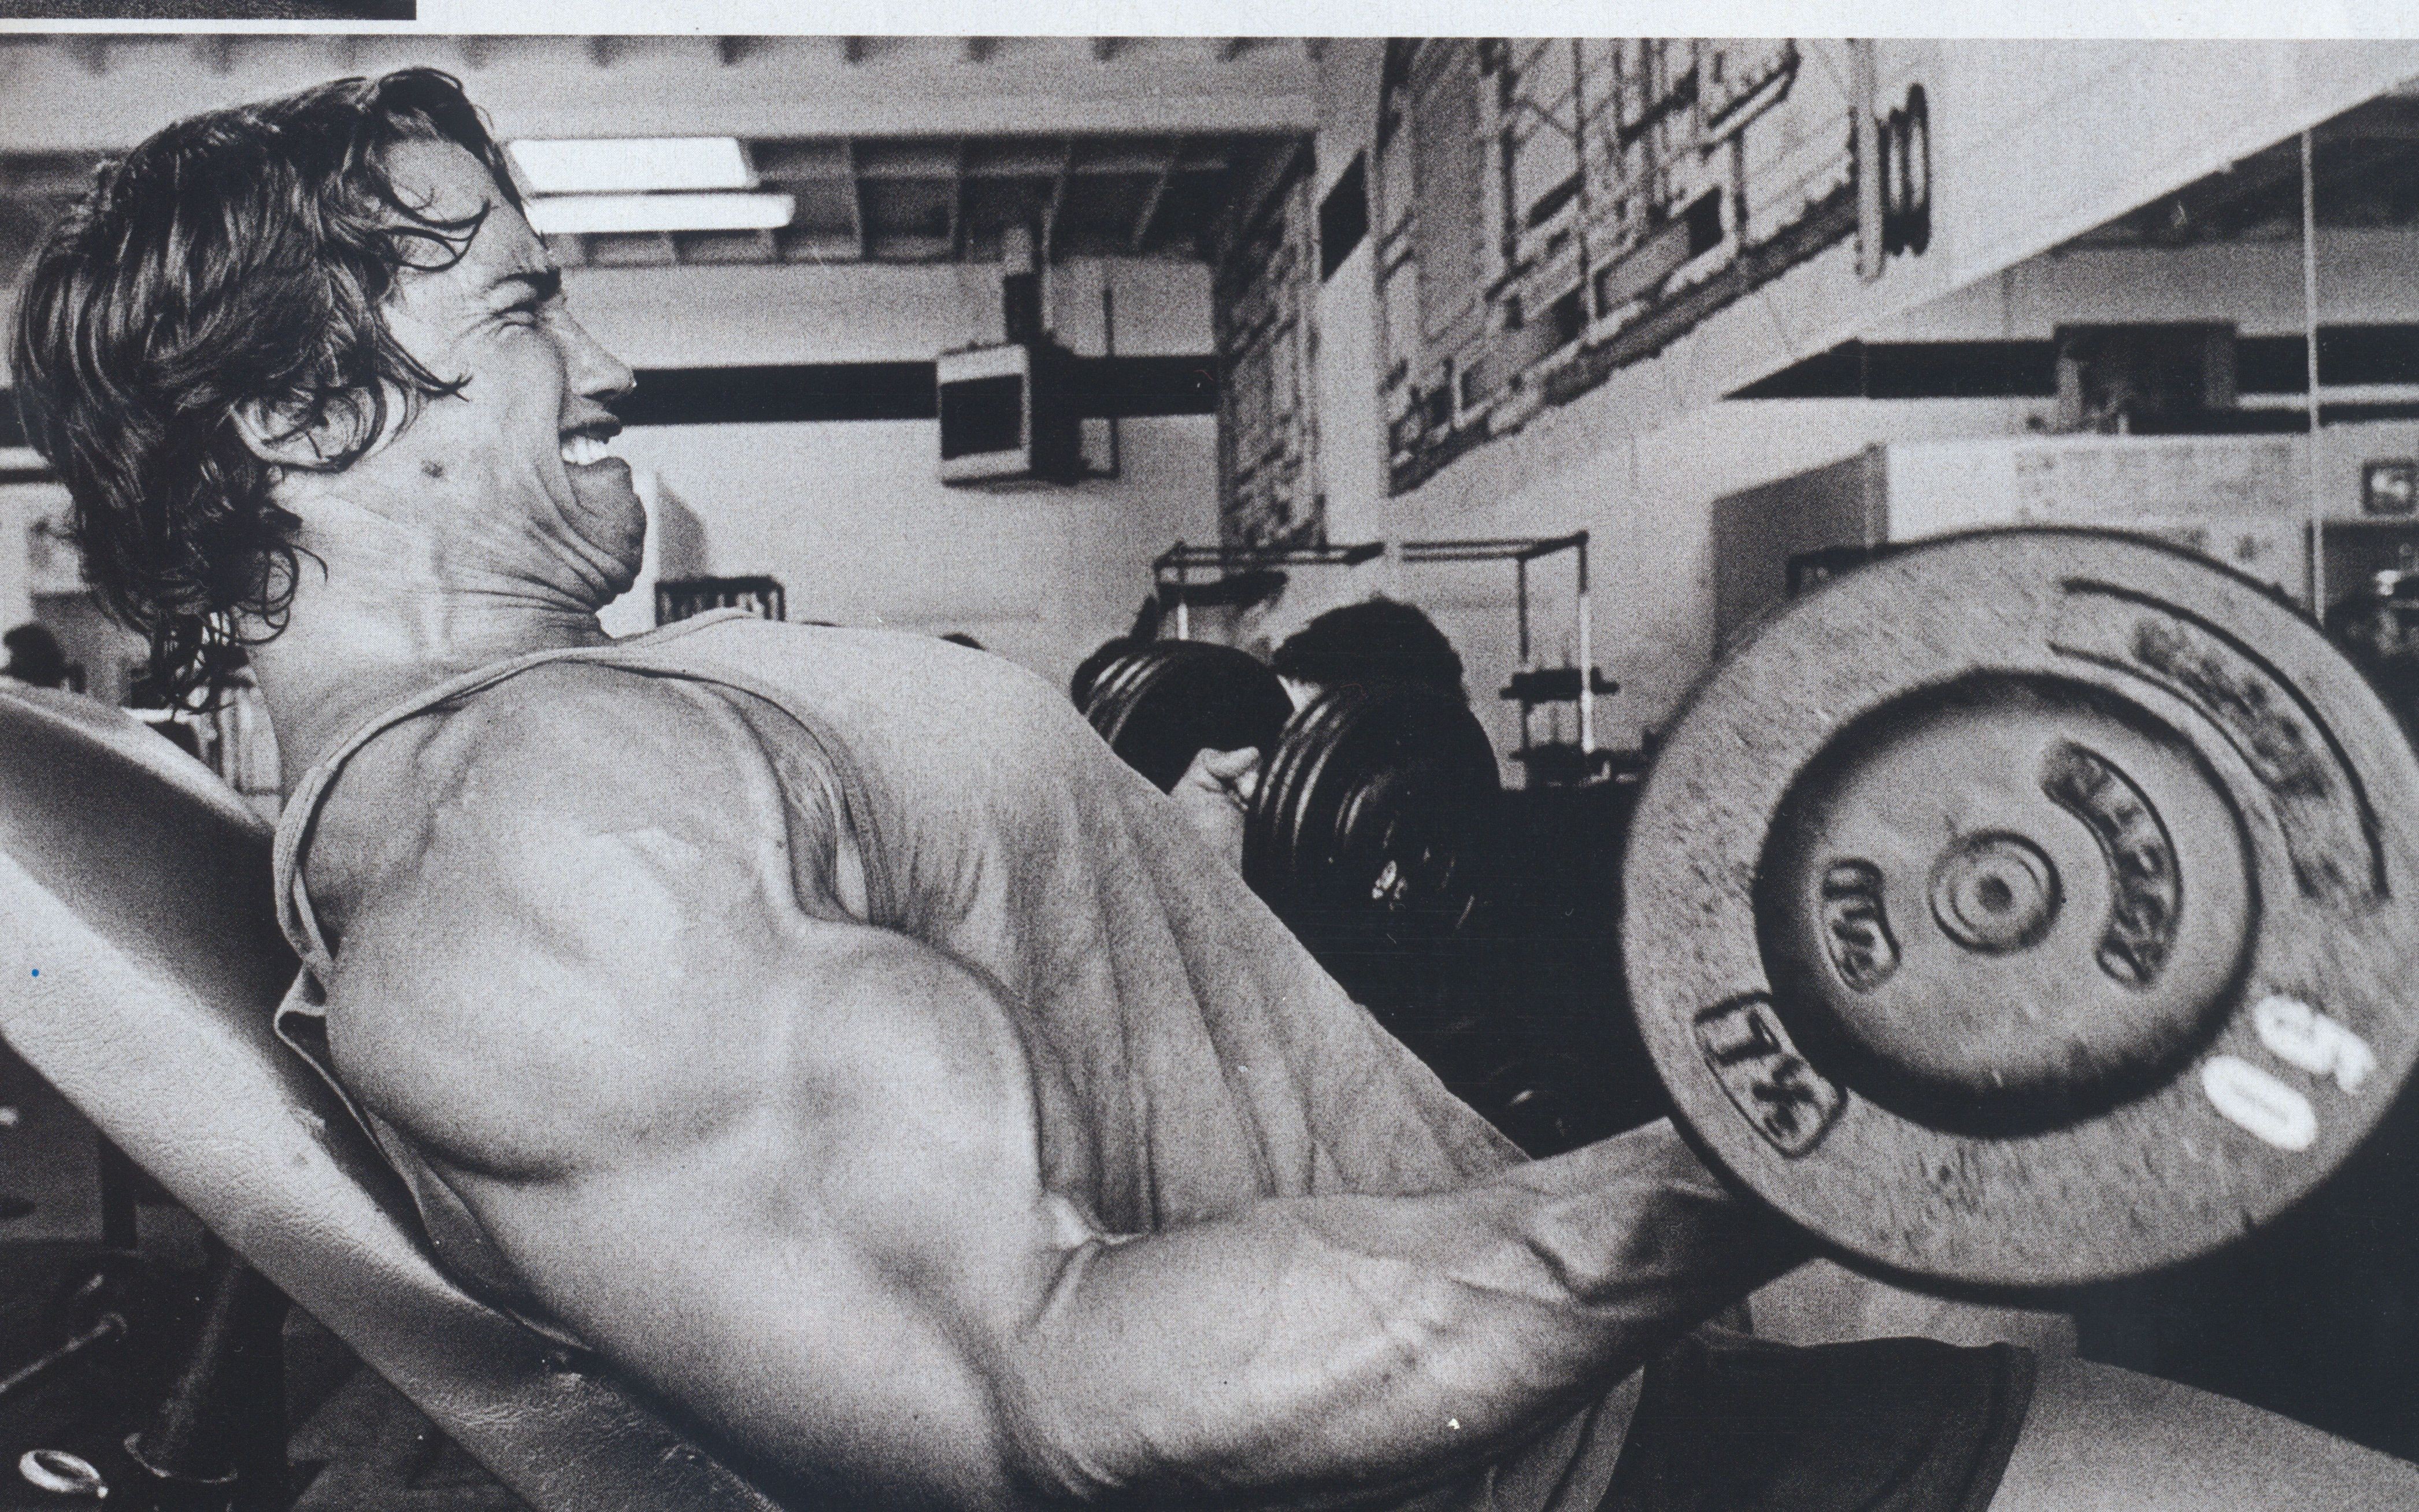 Arnold Schwarzenegger lifting weights